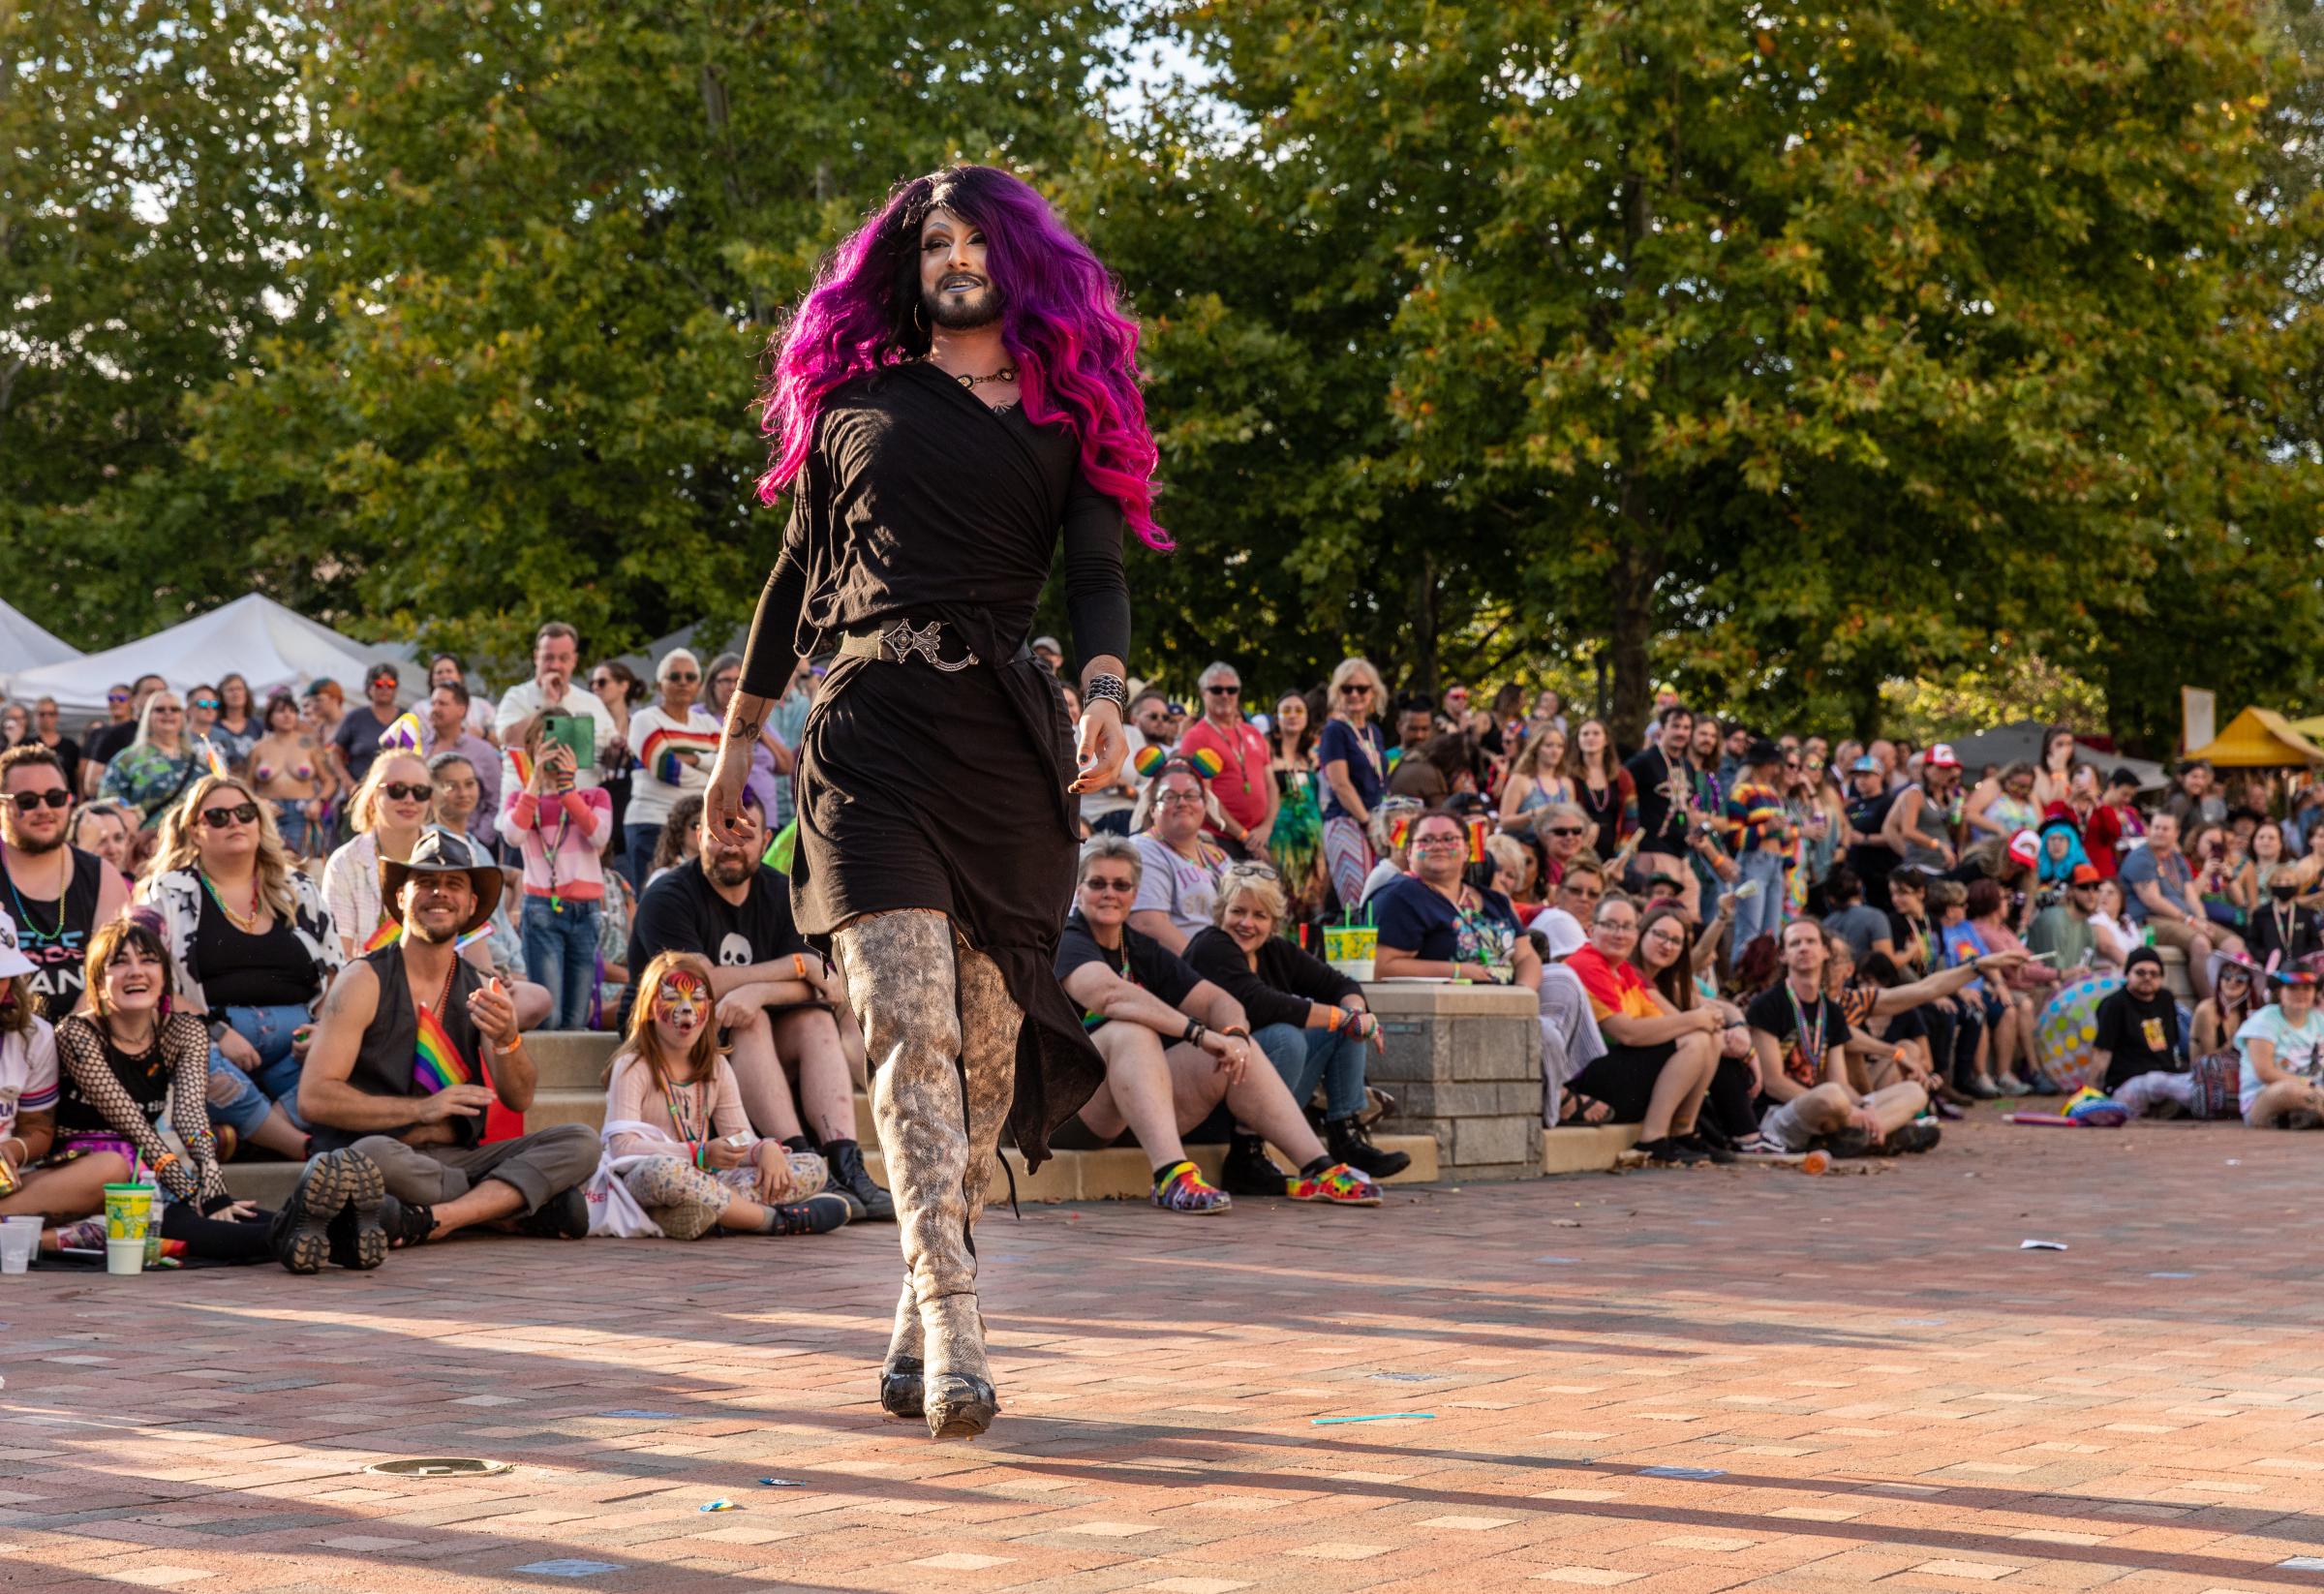 Blue Ridge Pride Festival 2022 - The Drag Showcase featured 19 drag queens performing dances in elaborate costumes.